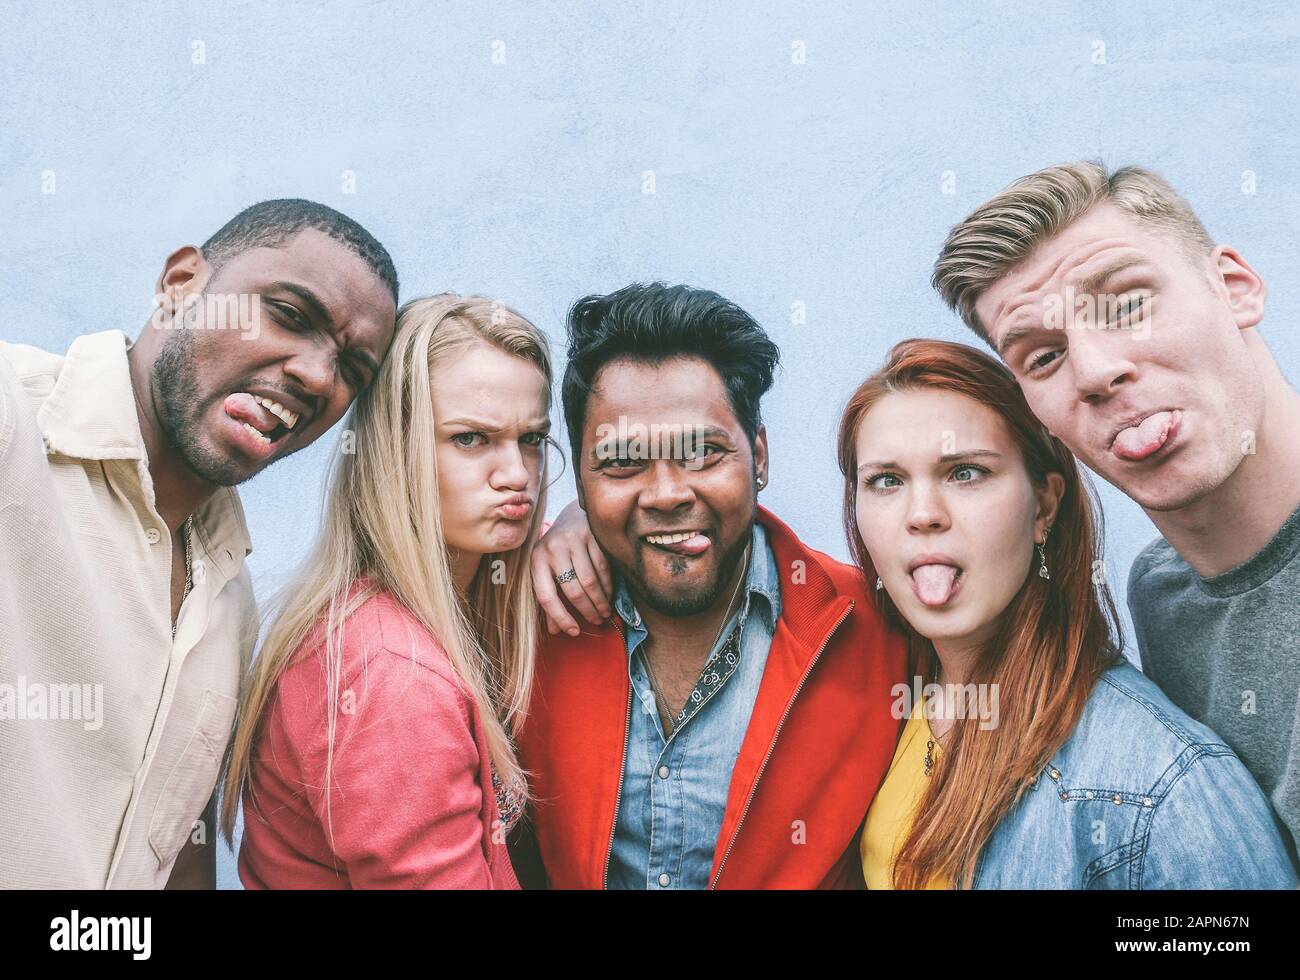 Fröhliche Freunde aus verschiedenen Kulturen und Rassen machen lustige Gesichter in der Smartphone-Kamera - Jugend- und Freundschaftskonzept - Kontrastfilter Stockfoto